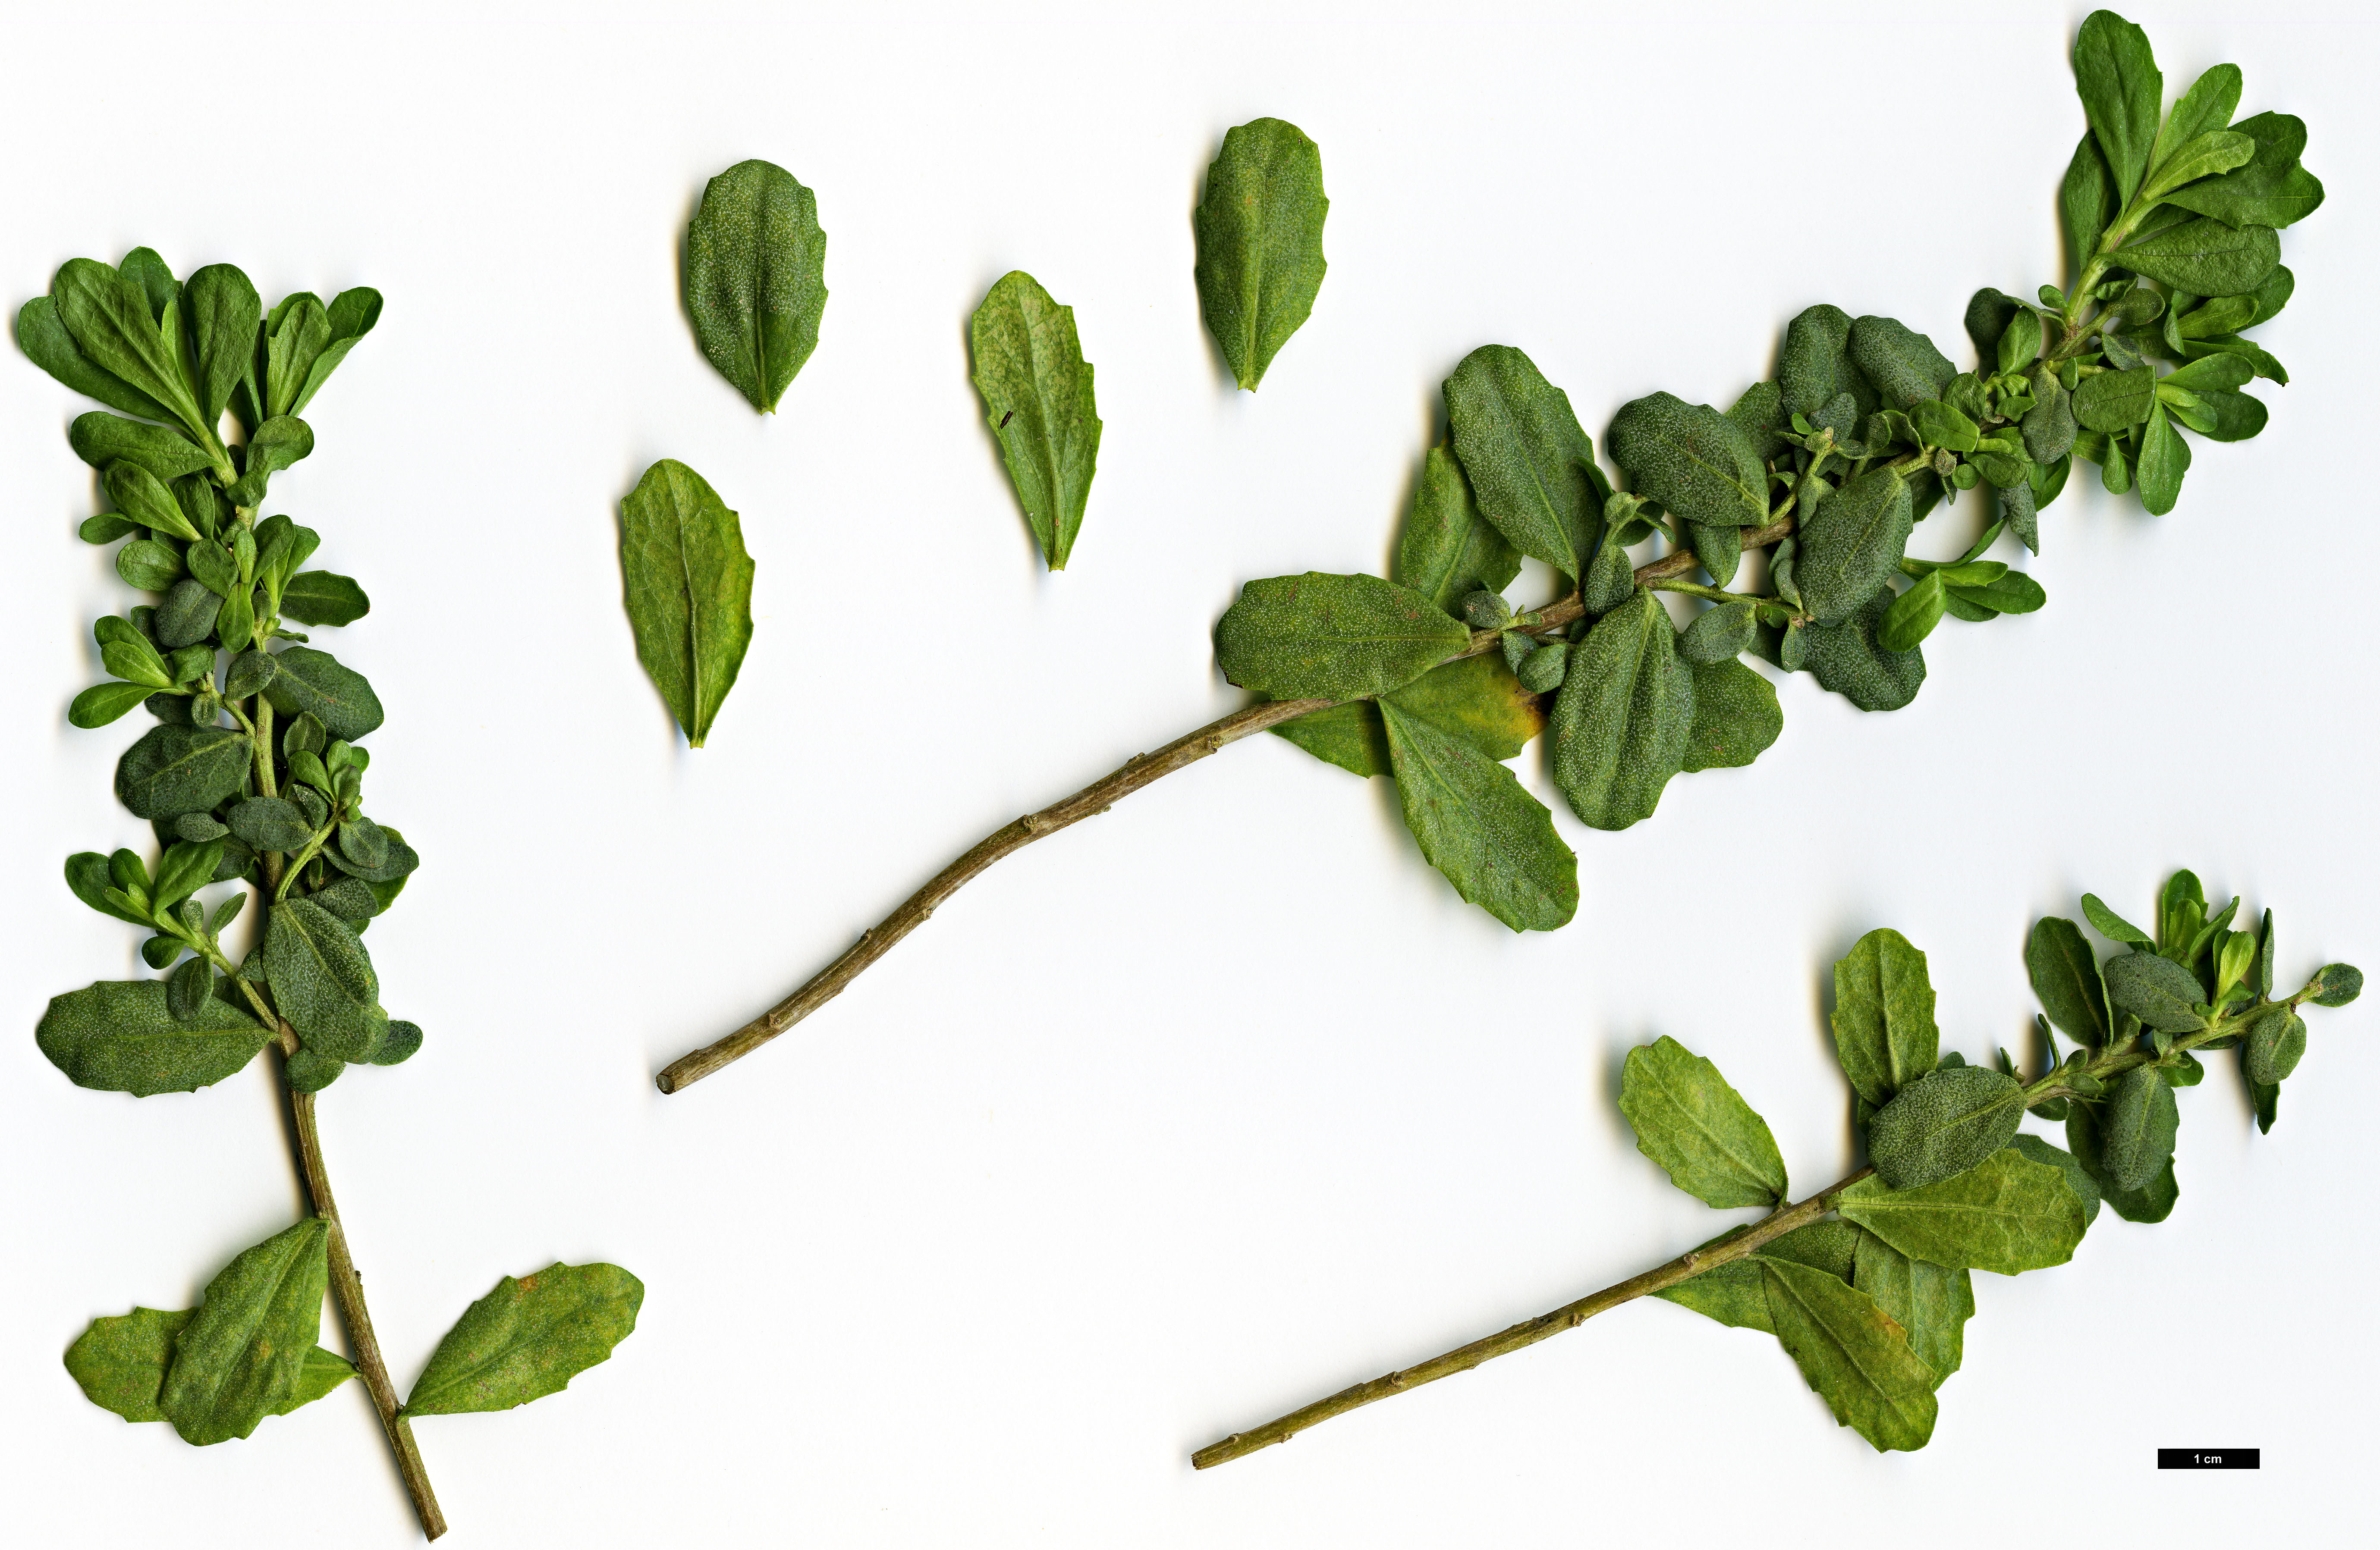 High resolution image: Family: Asteraceae - Genus: Baccharis - Taxon: pilularis - SpeciesSub: var. consanguinea